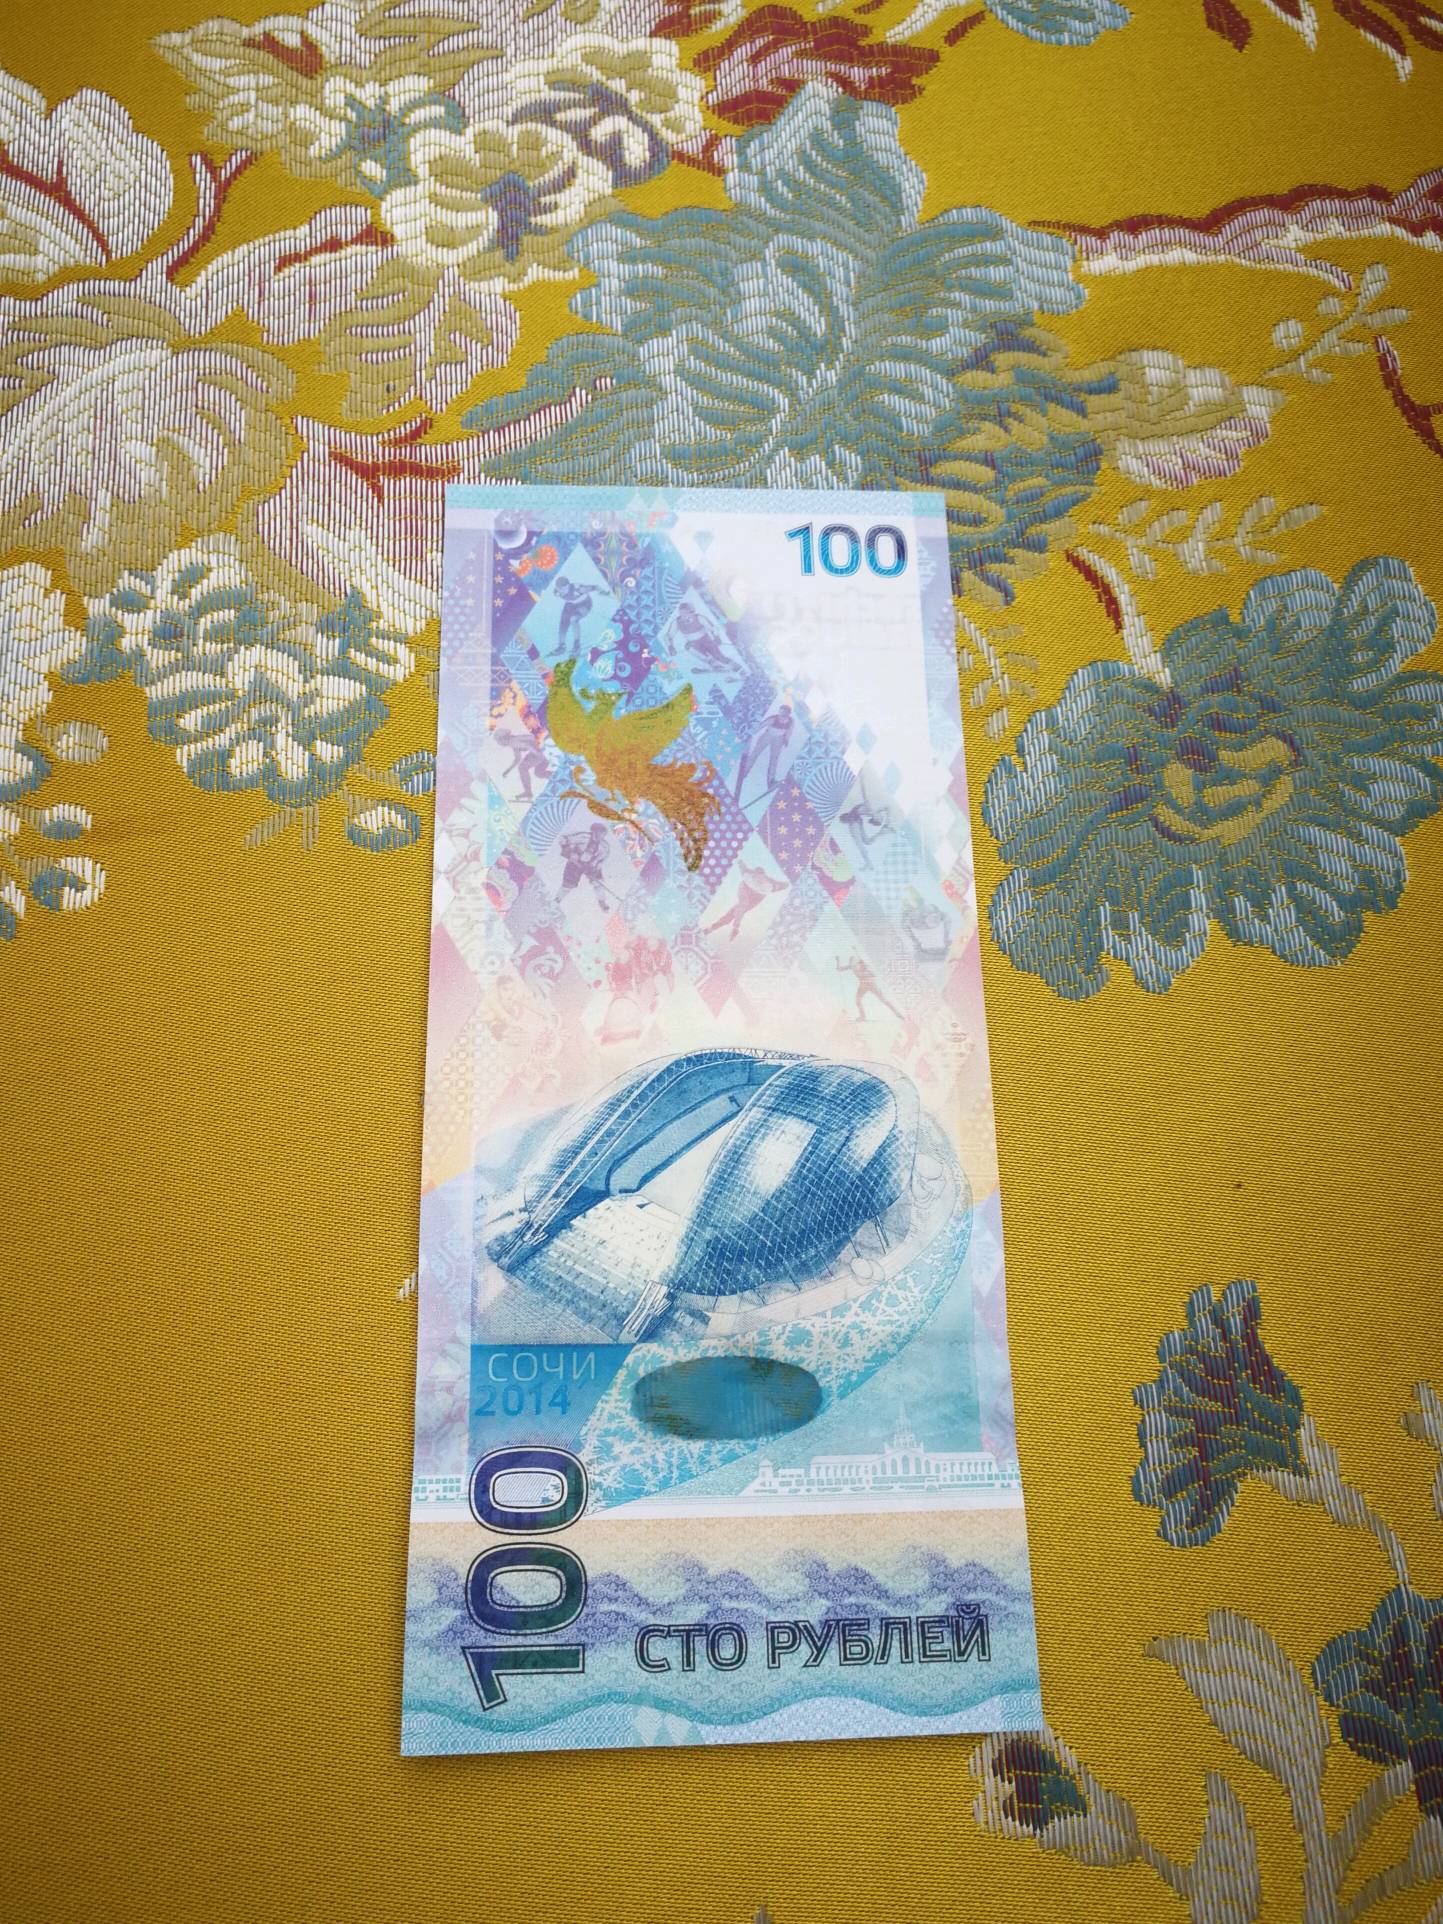 我国之后的第二张奥运会纪念钞,俄罗斯马上发行世界杯纪念钞,目前处于